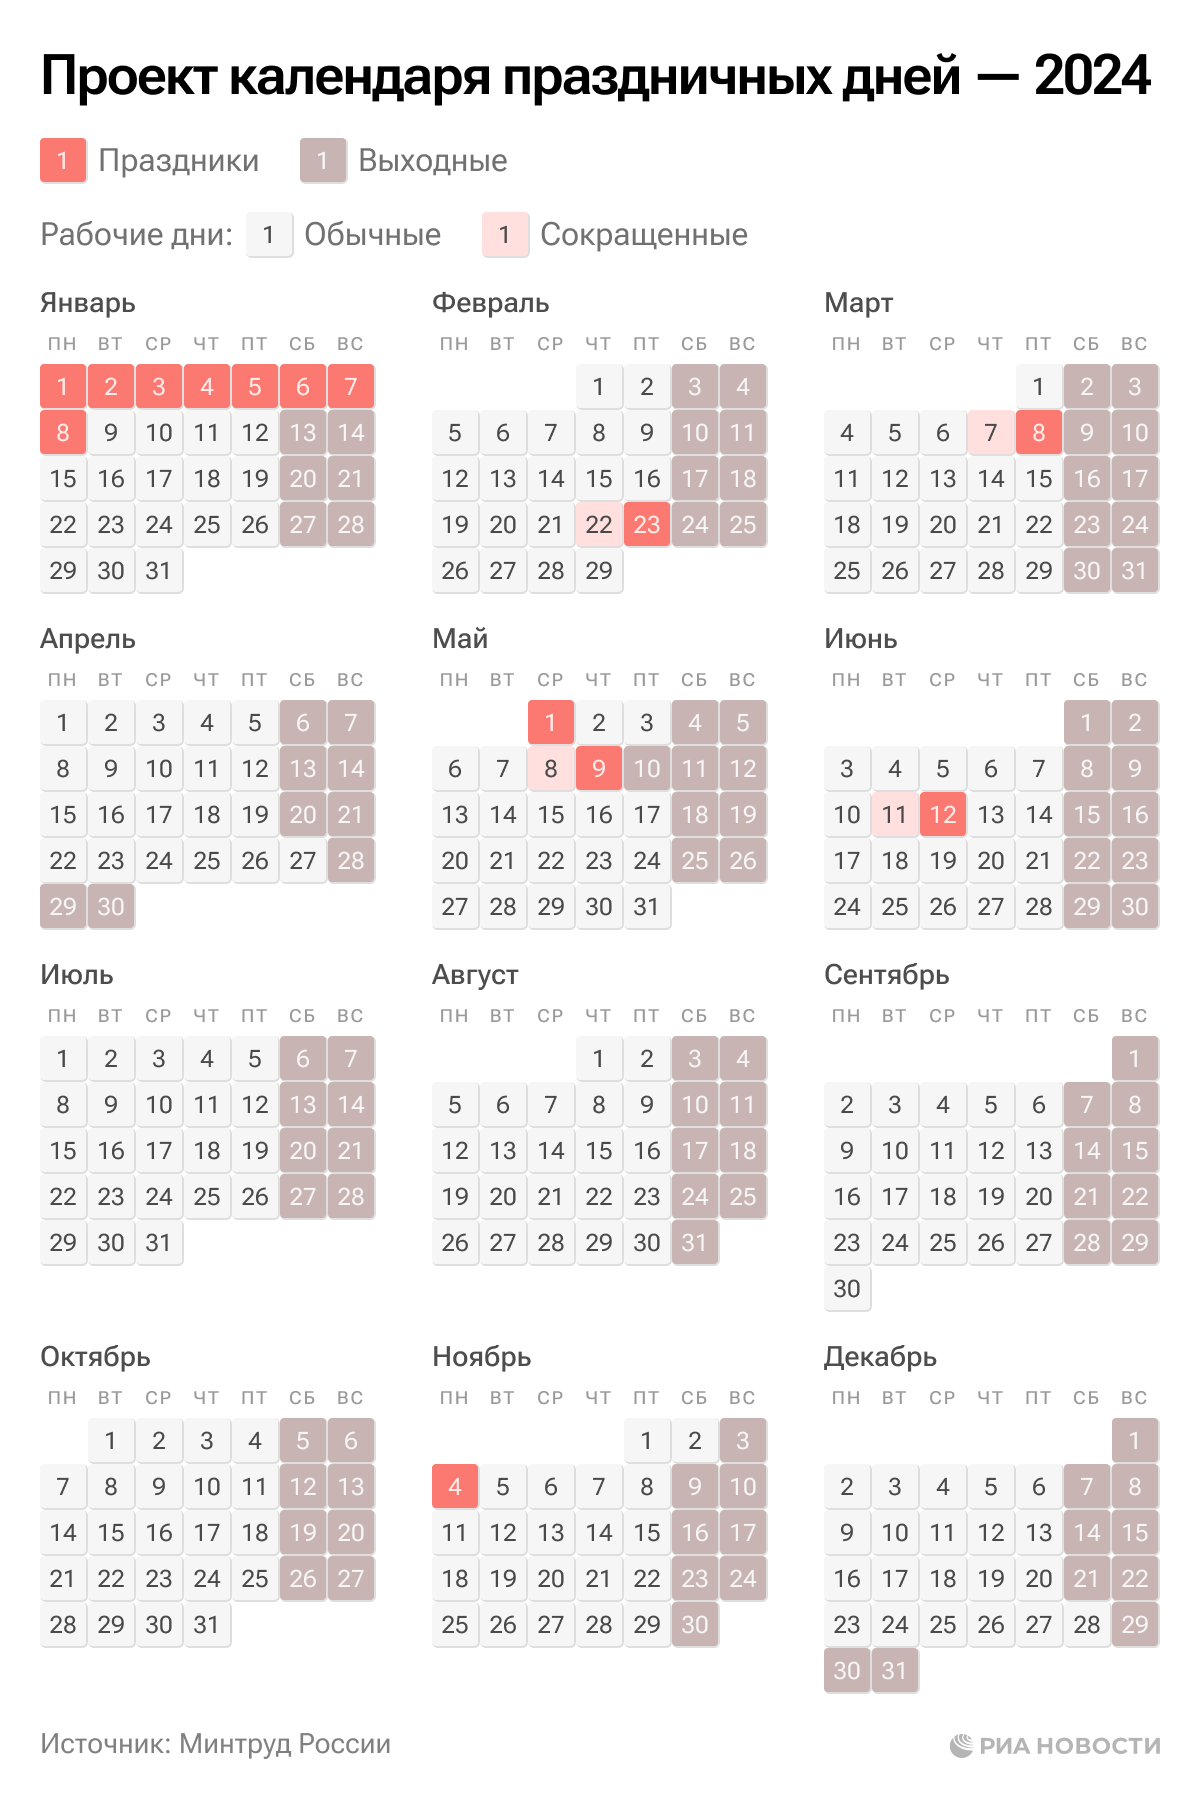 Как отмечаем праздники в 2024 году. Календарь праздников. Календарь выходных. Календарь рабочих дней. График праздничных нерабочих дней в 2024.